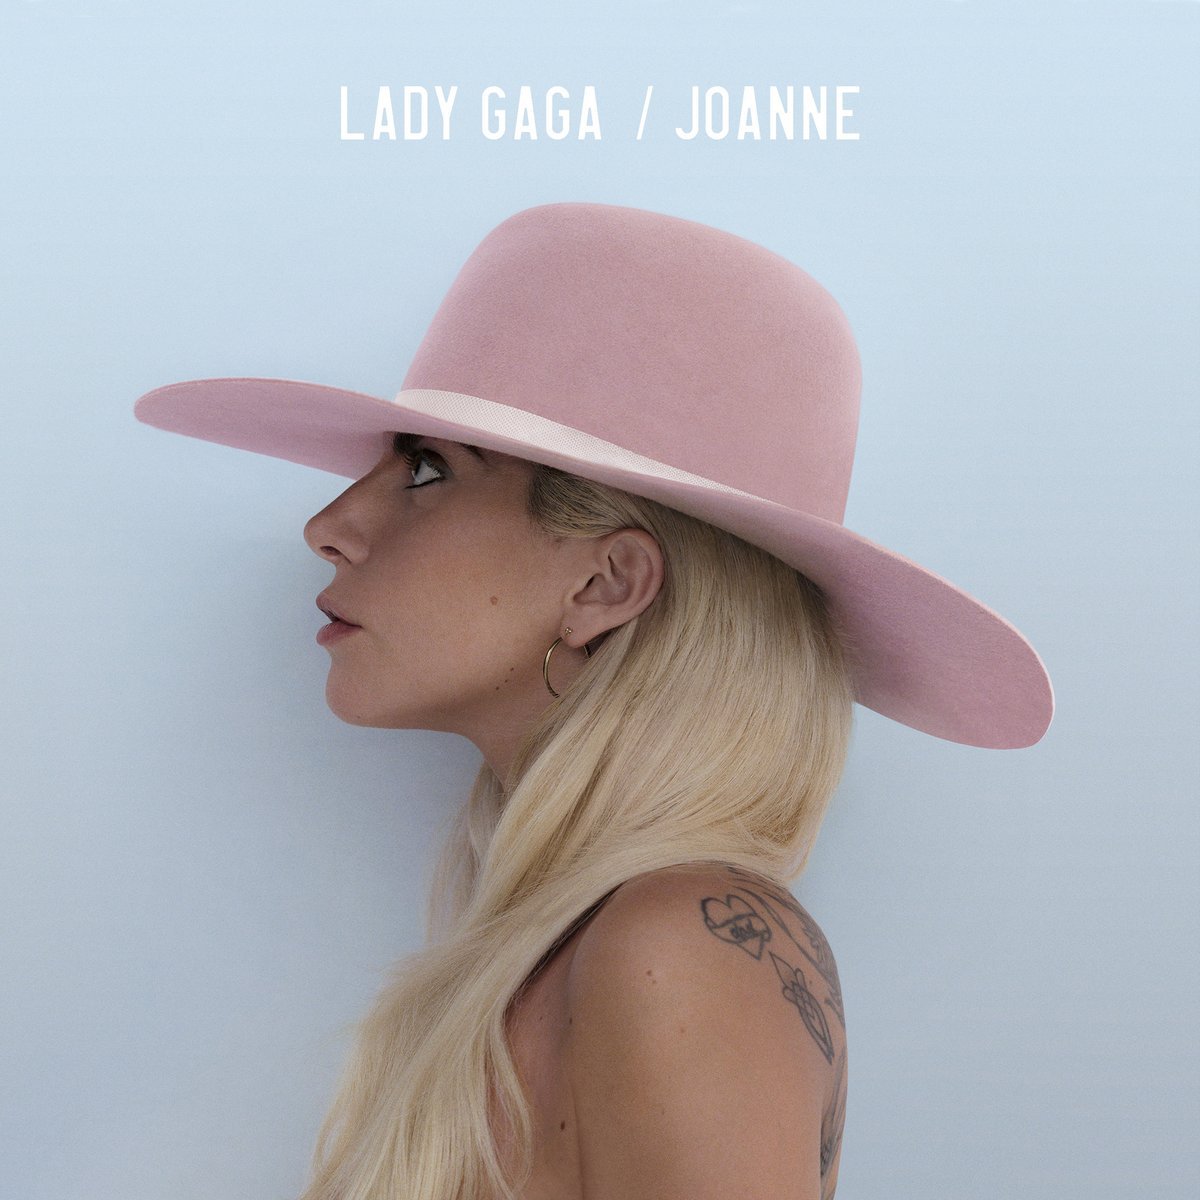 Joanne – Lady Gaga Album